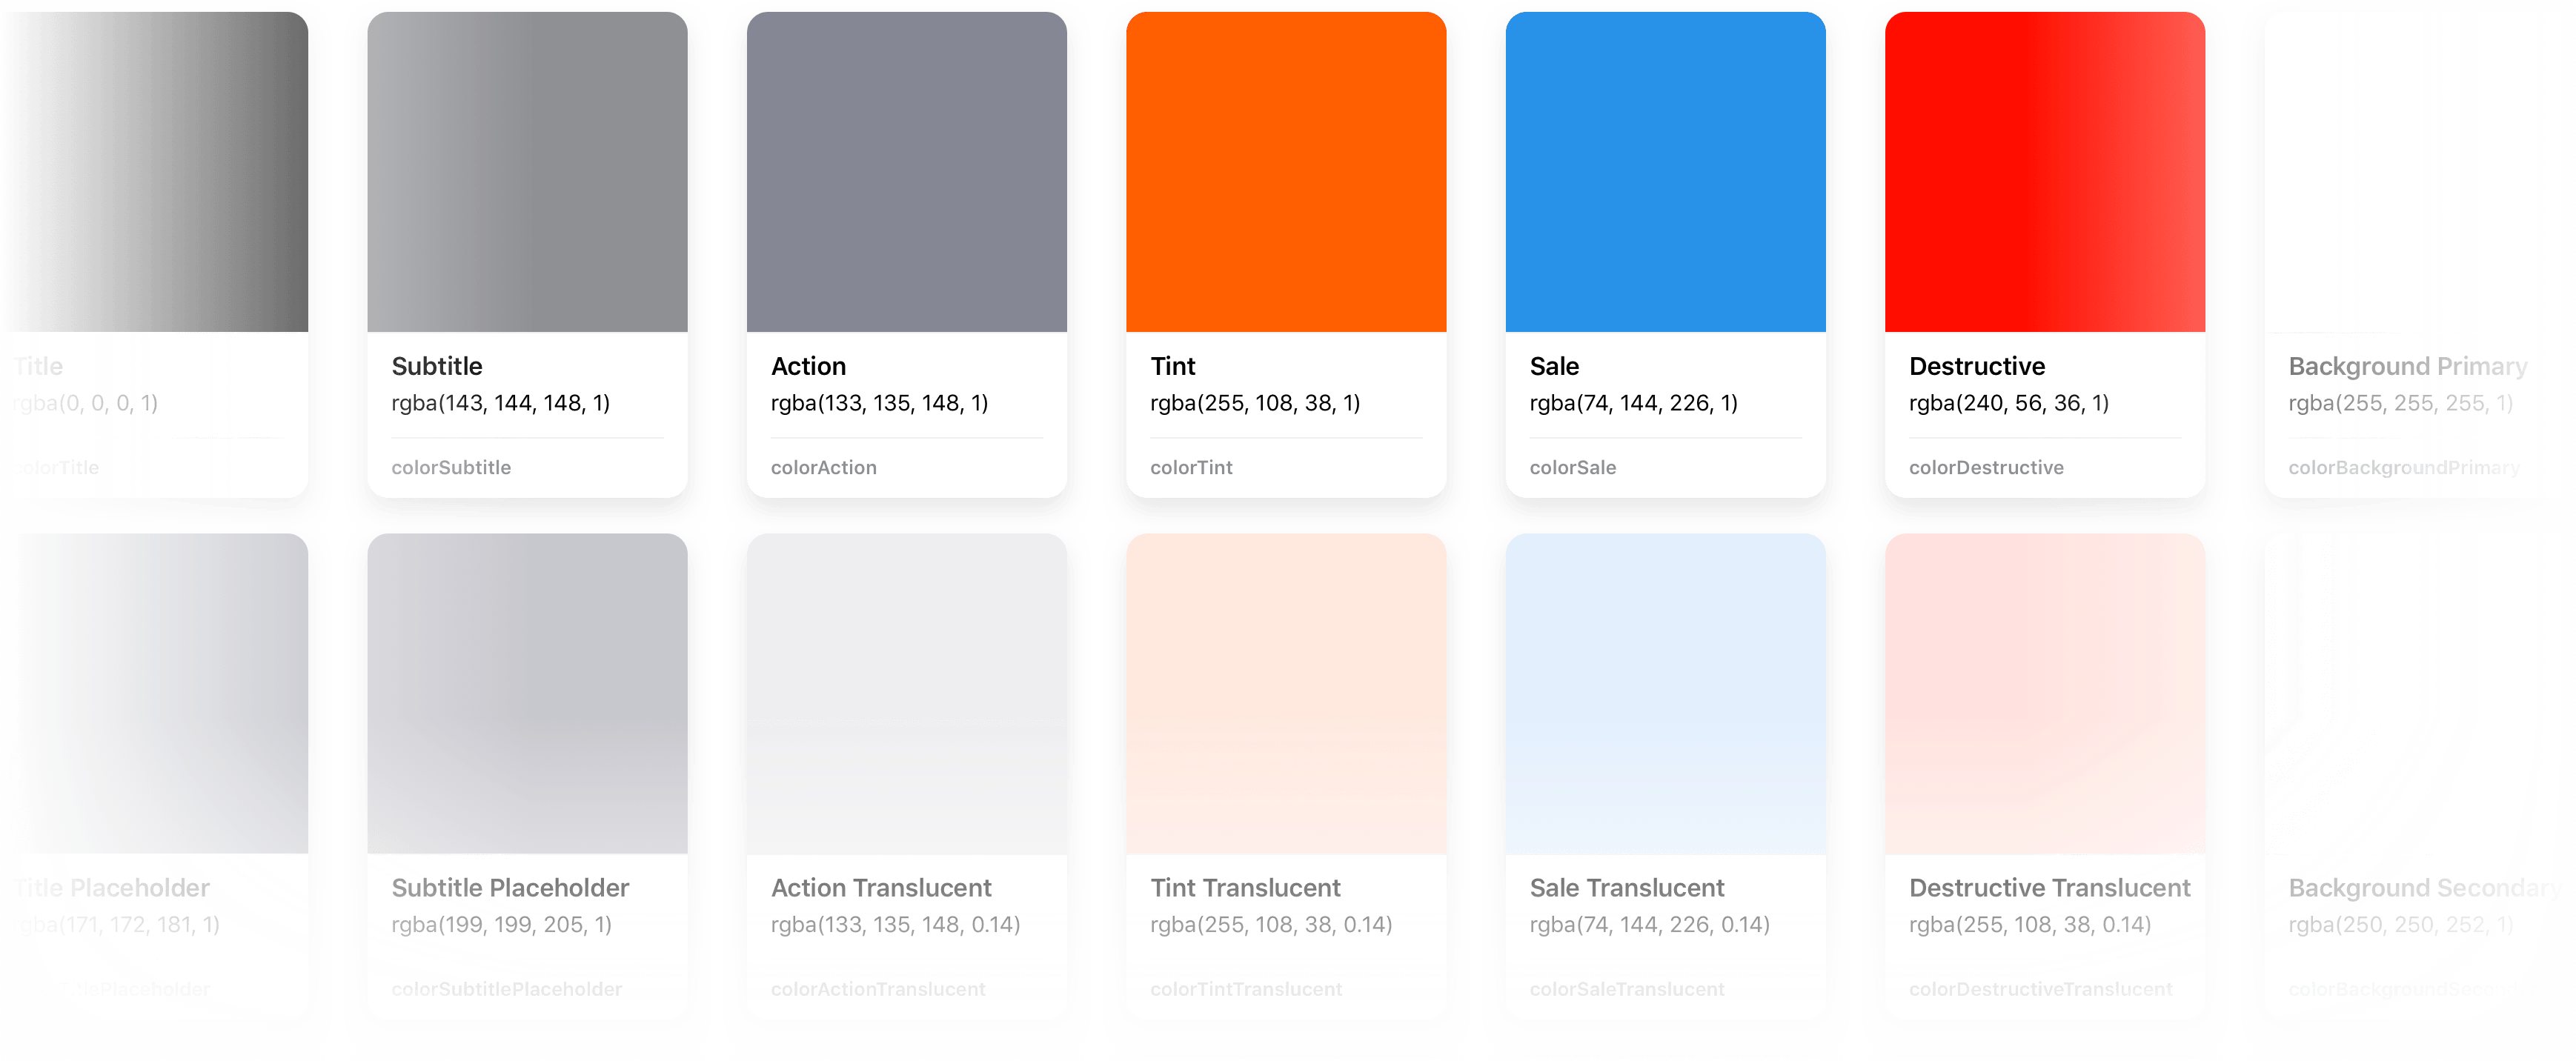 Design system colors mockup.